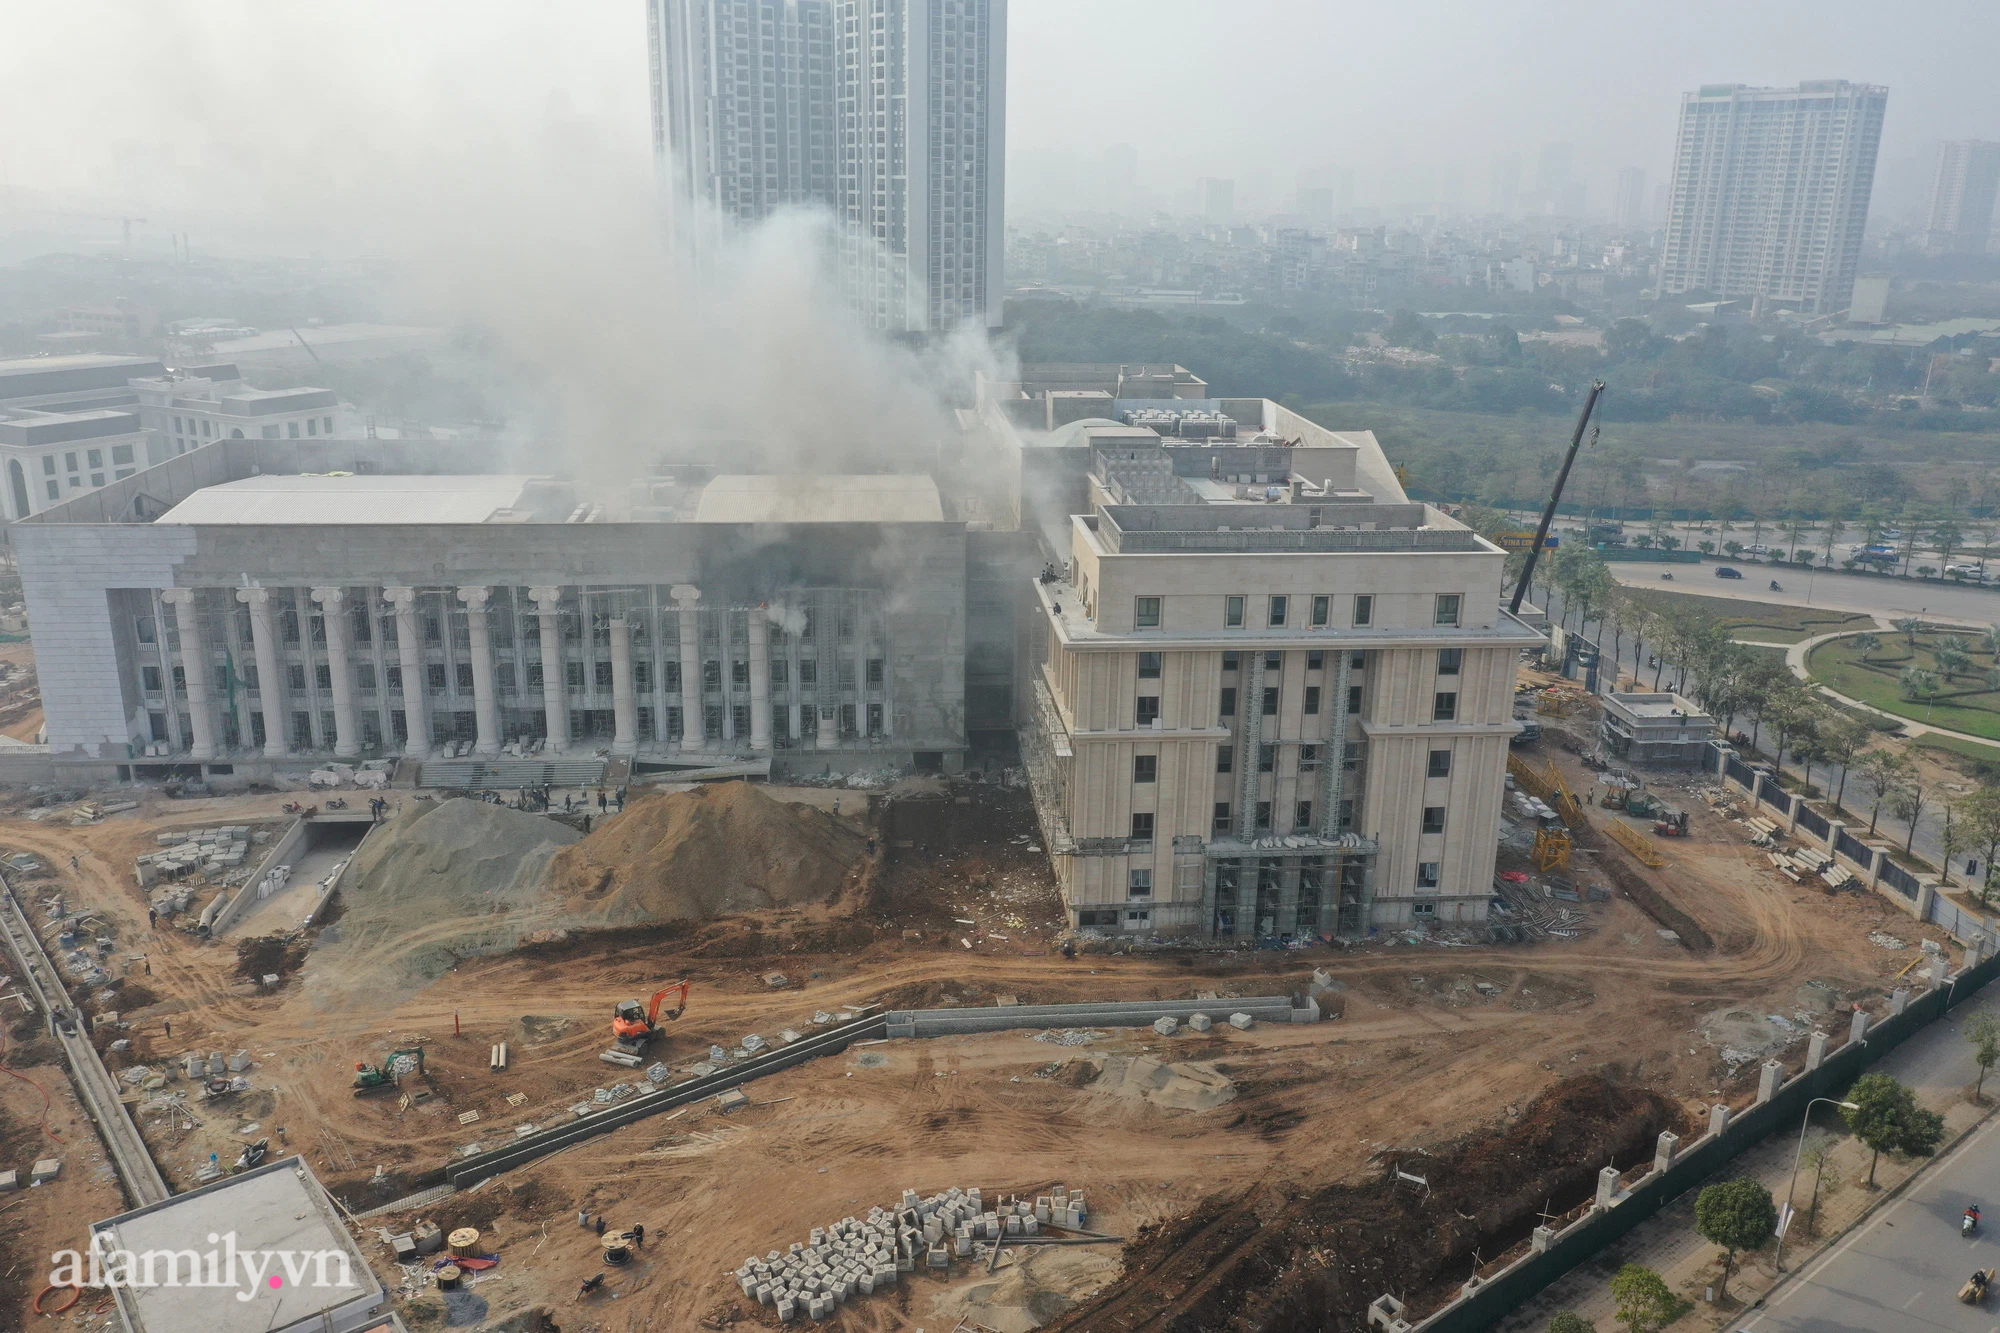 NÓNG: Cháy lớn tại trụ sở Tòa án Nhân dân TP Hà Nội đang xây dựng - ảnh 3